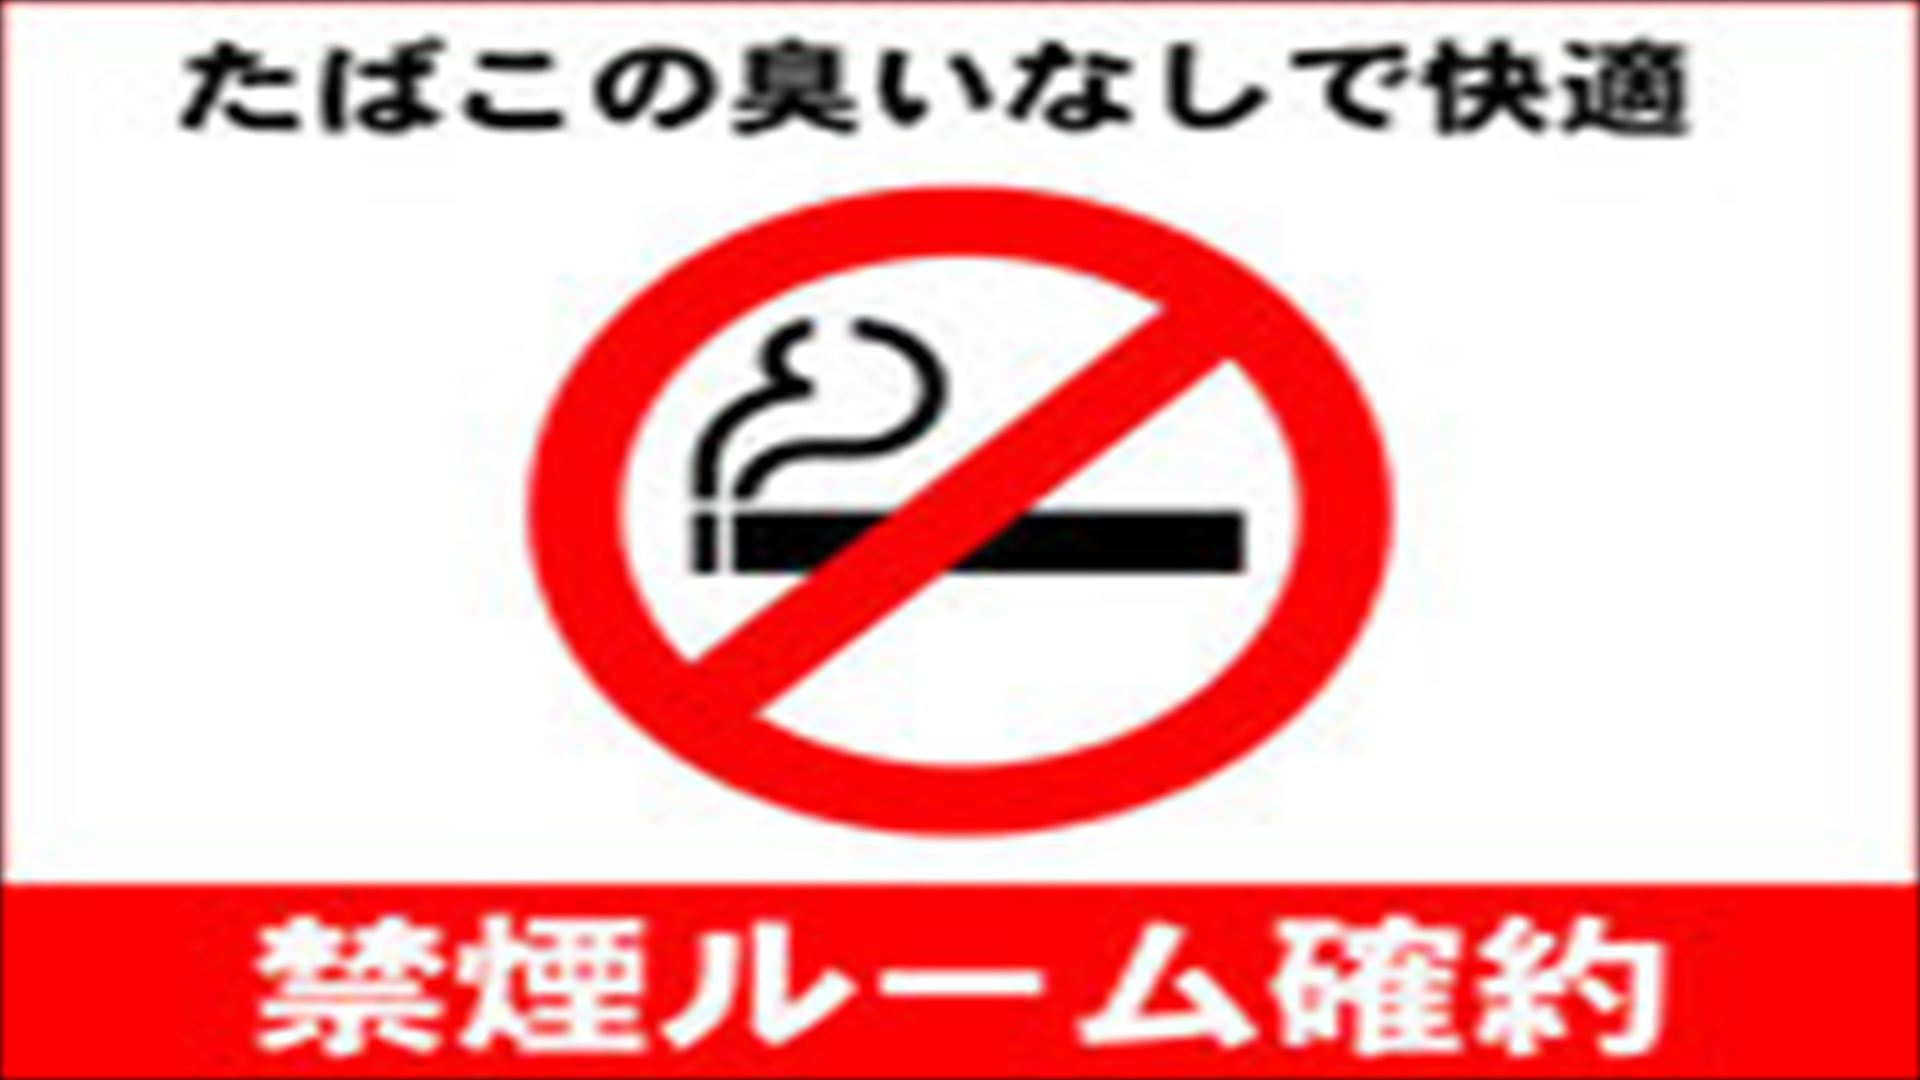 【1ルーム限定!!】 ♪32㎡の贅沢♪禁煙スーペリアツイン11:00アウト